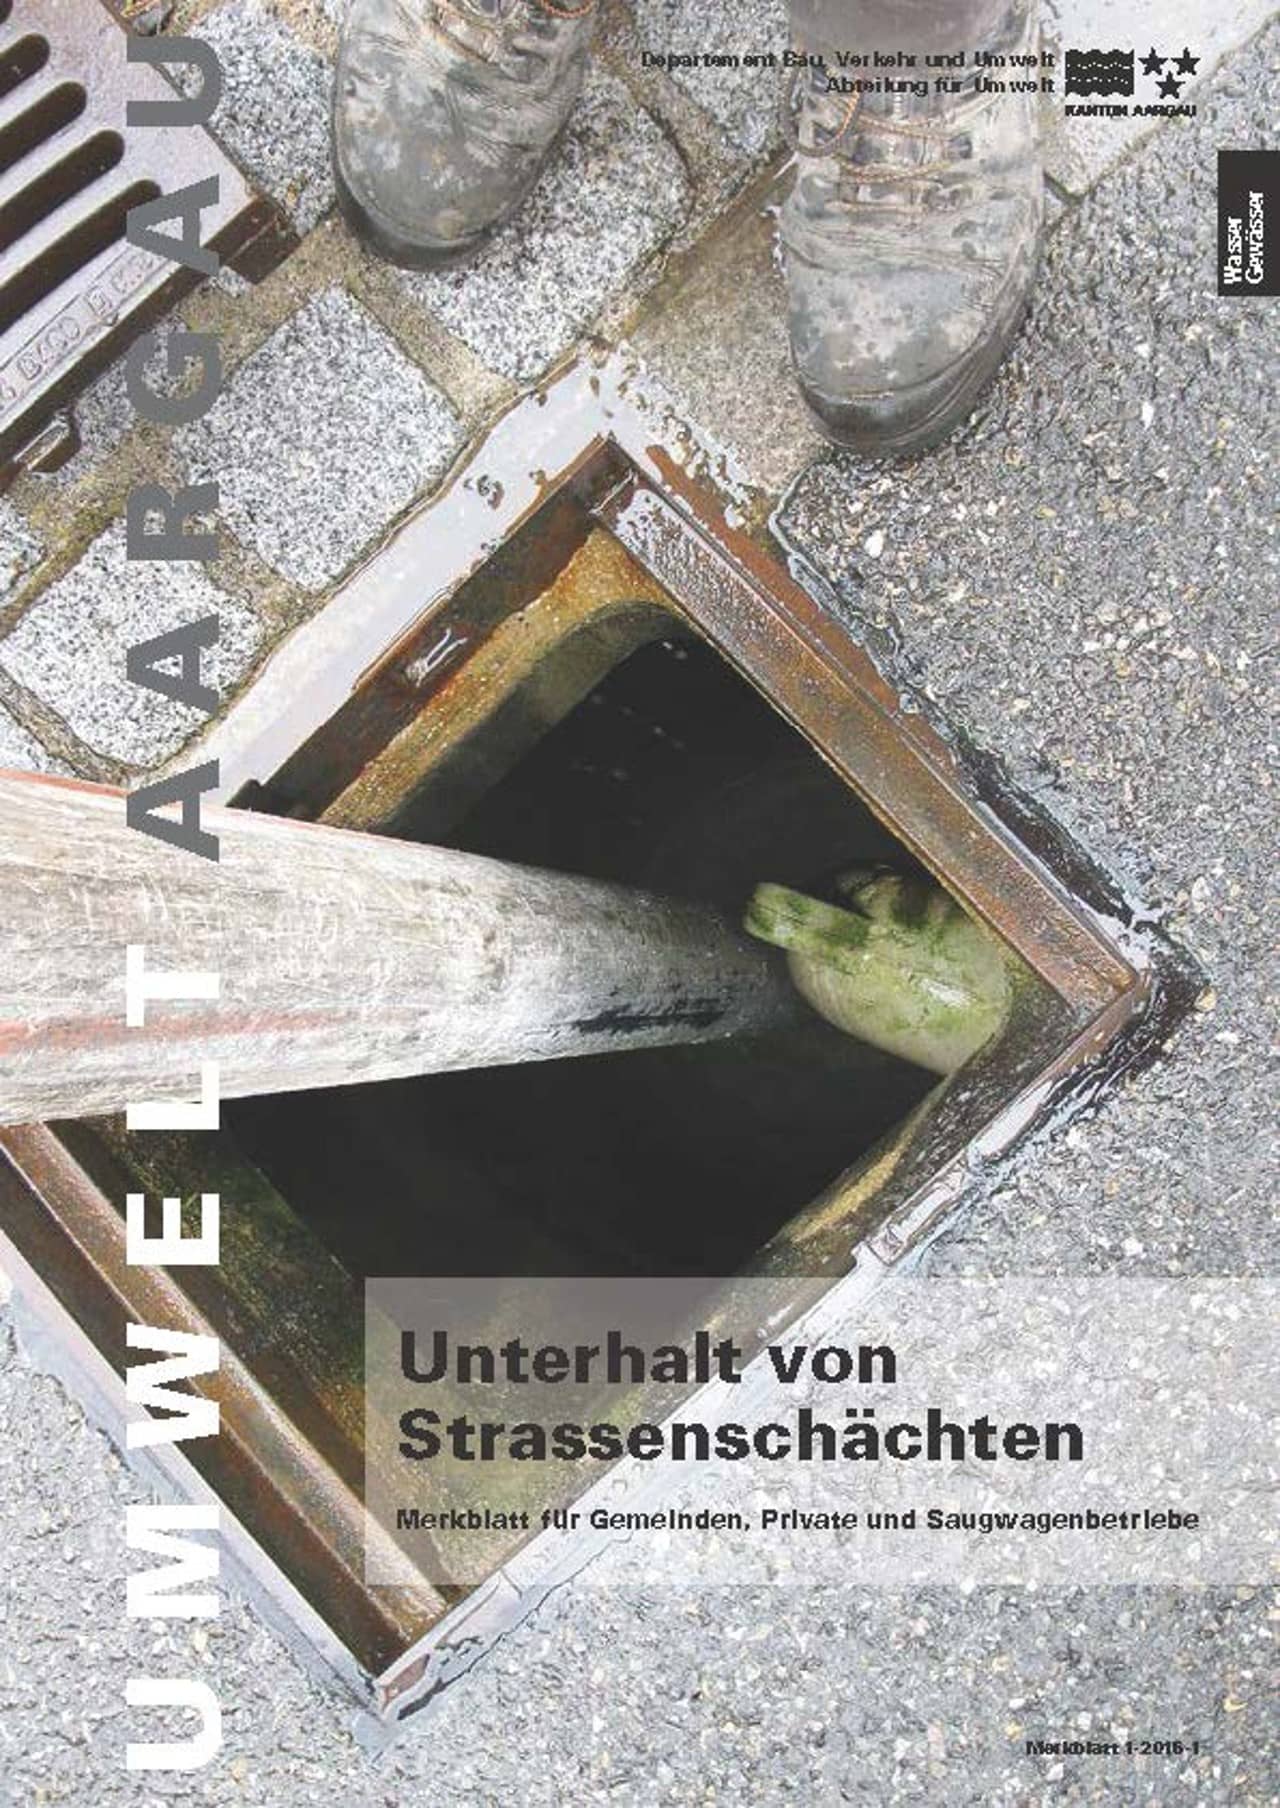 Titelblatt des Merkblattes "Unterhalt von Strassenschächten".